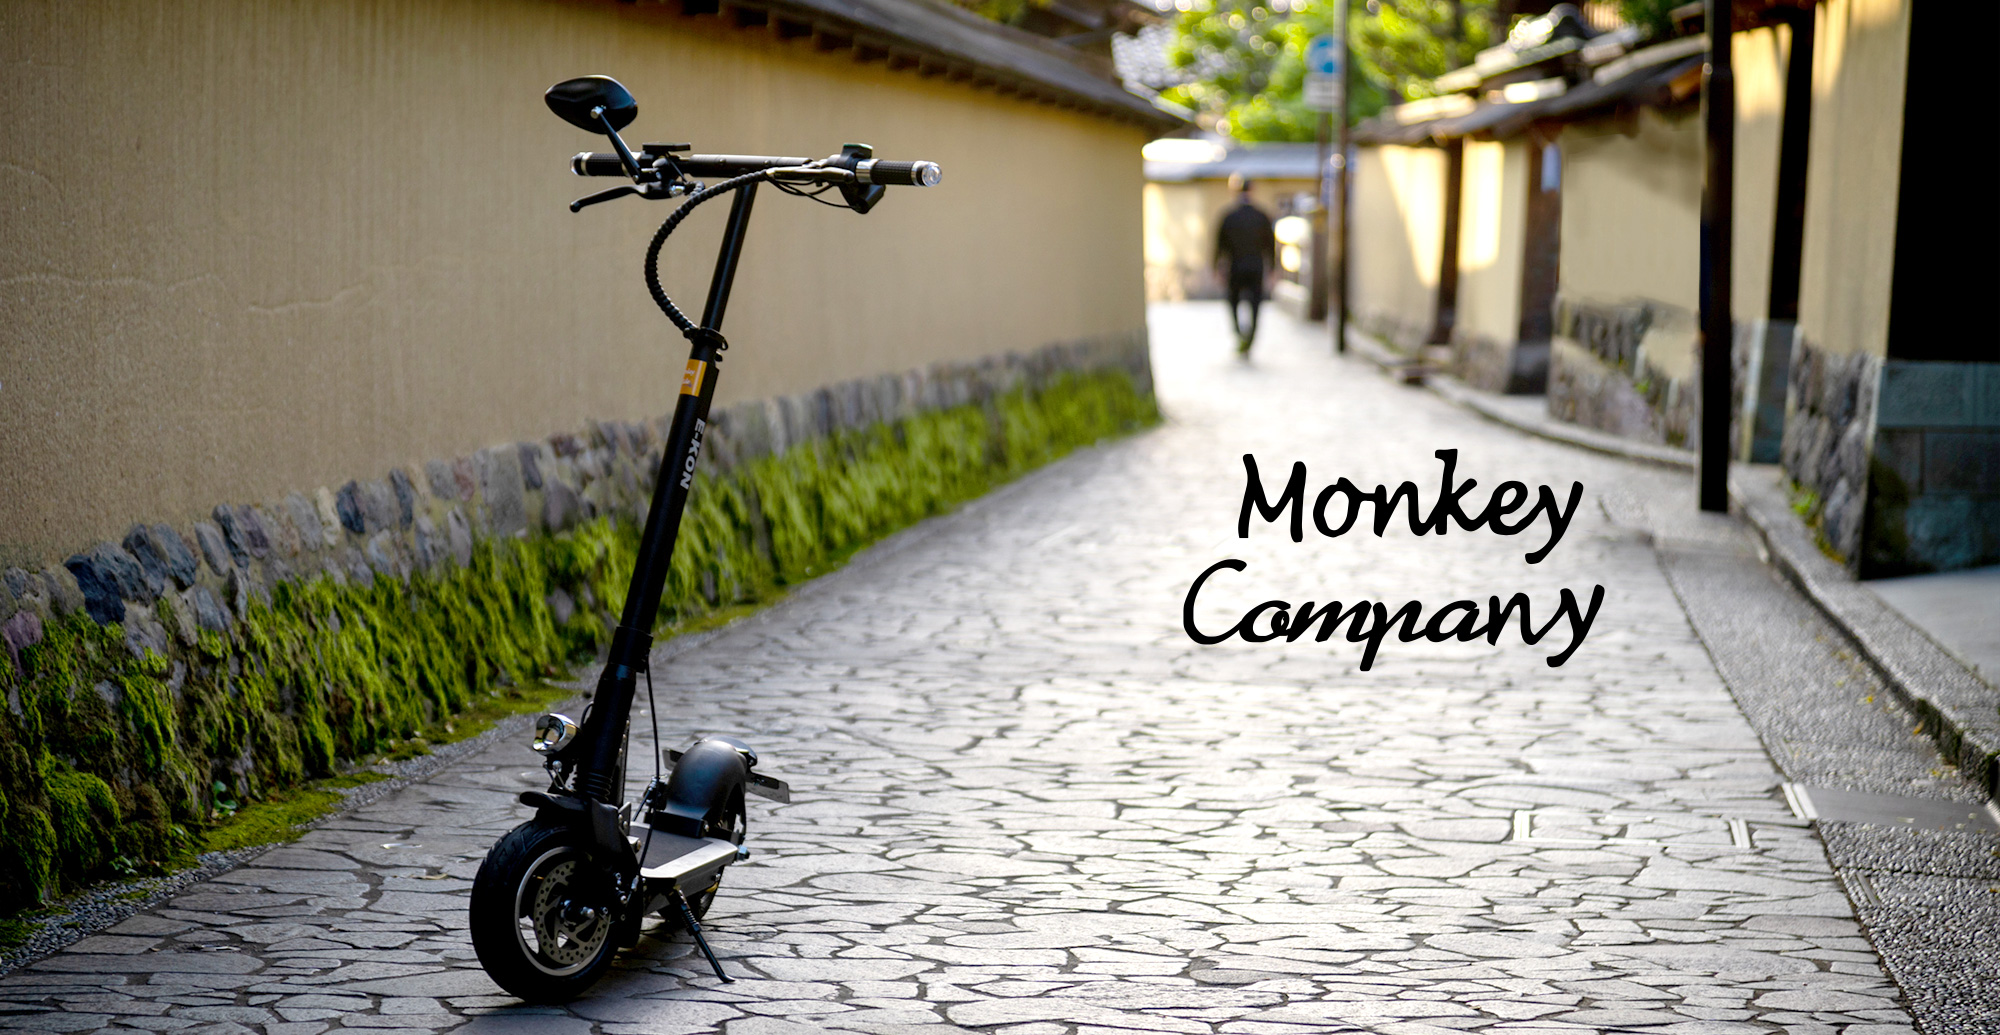 Monkey Company